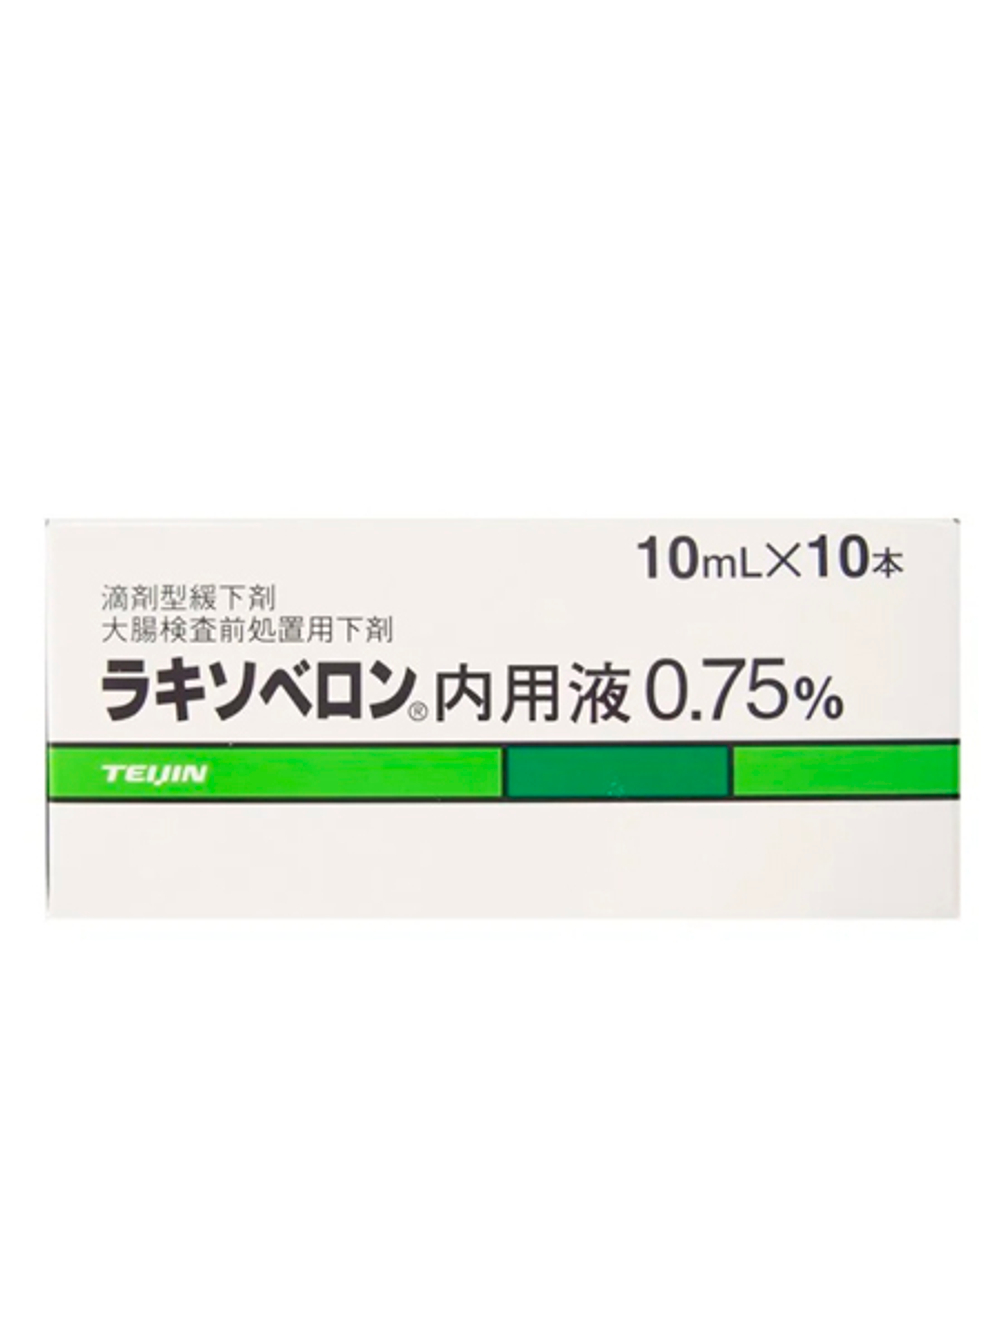 Лаксоберон раствор 0.75% 10 мл.